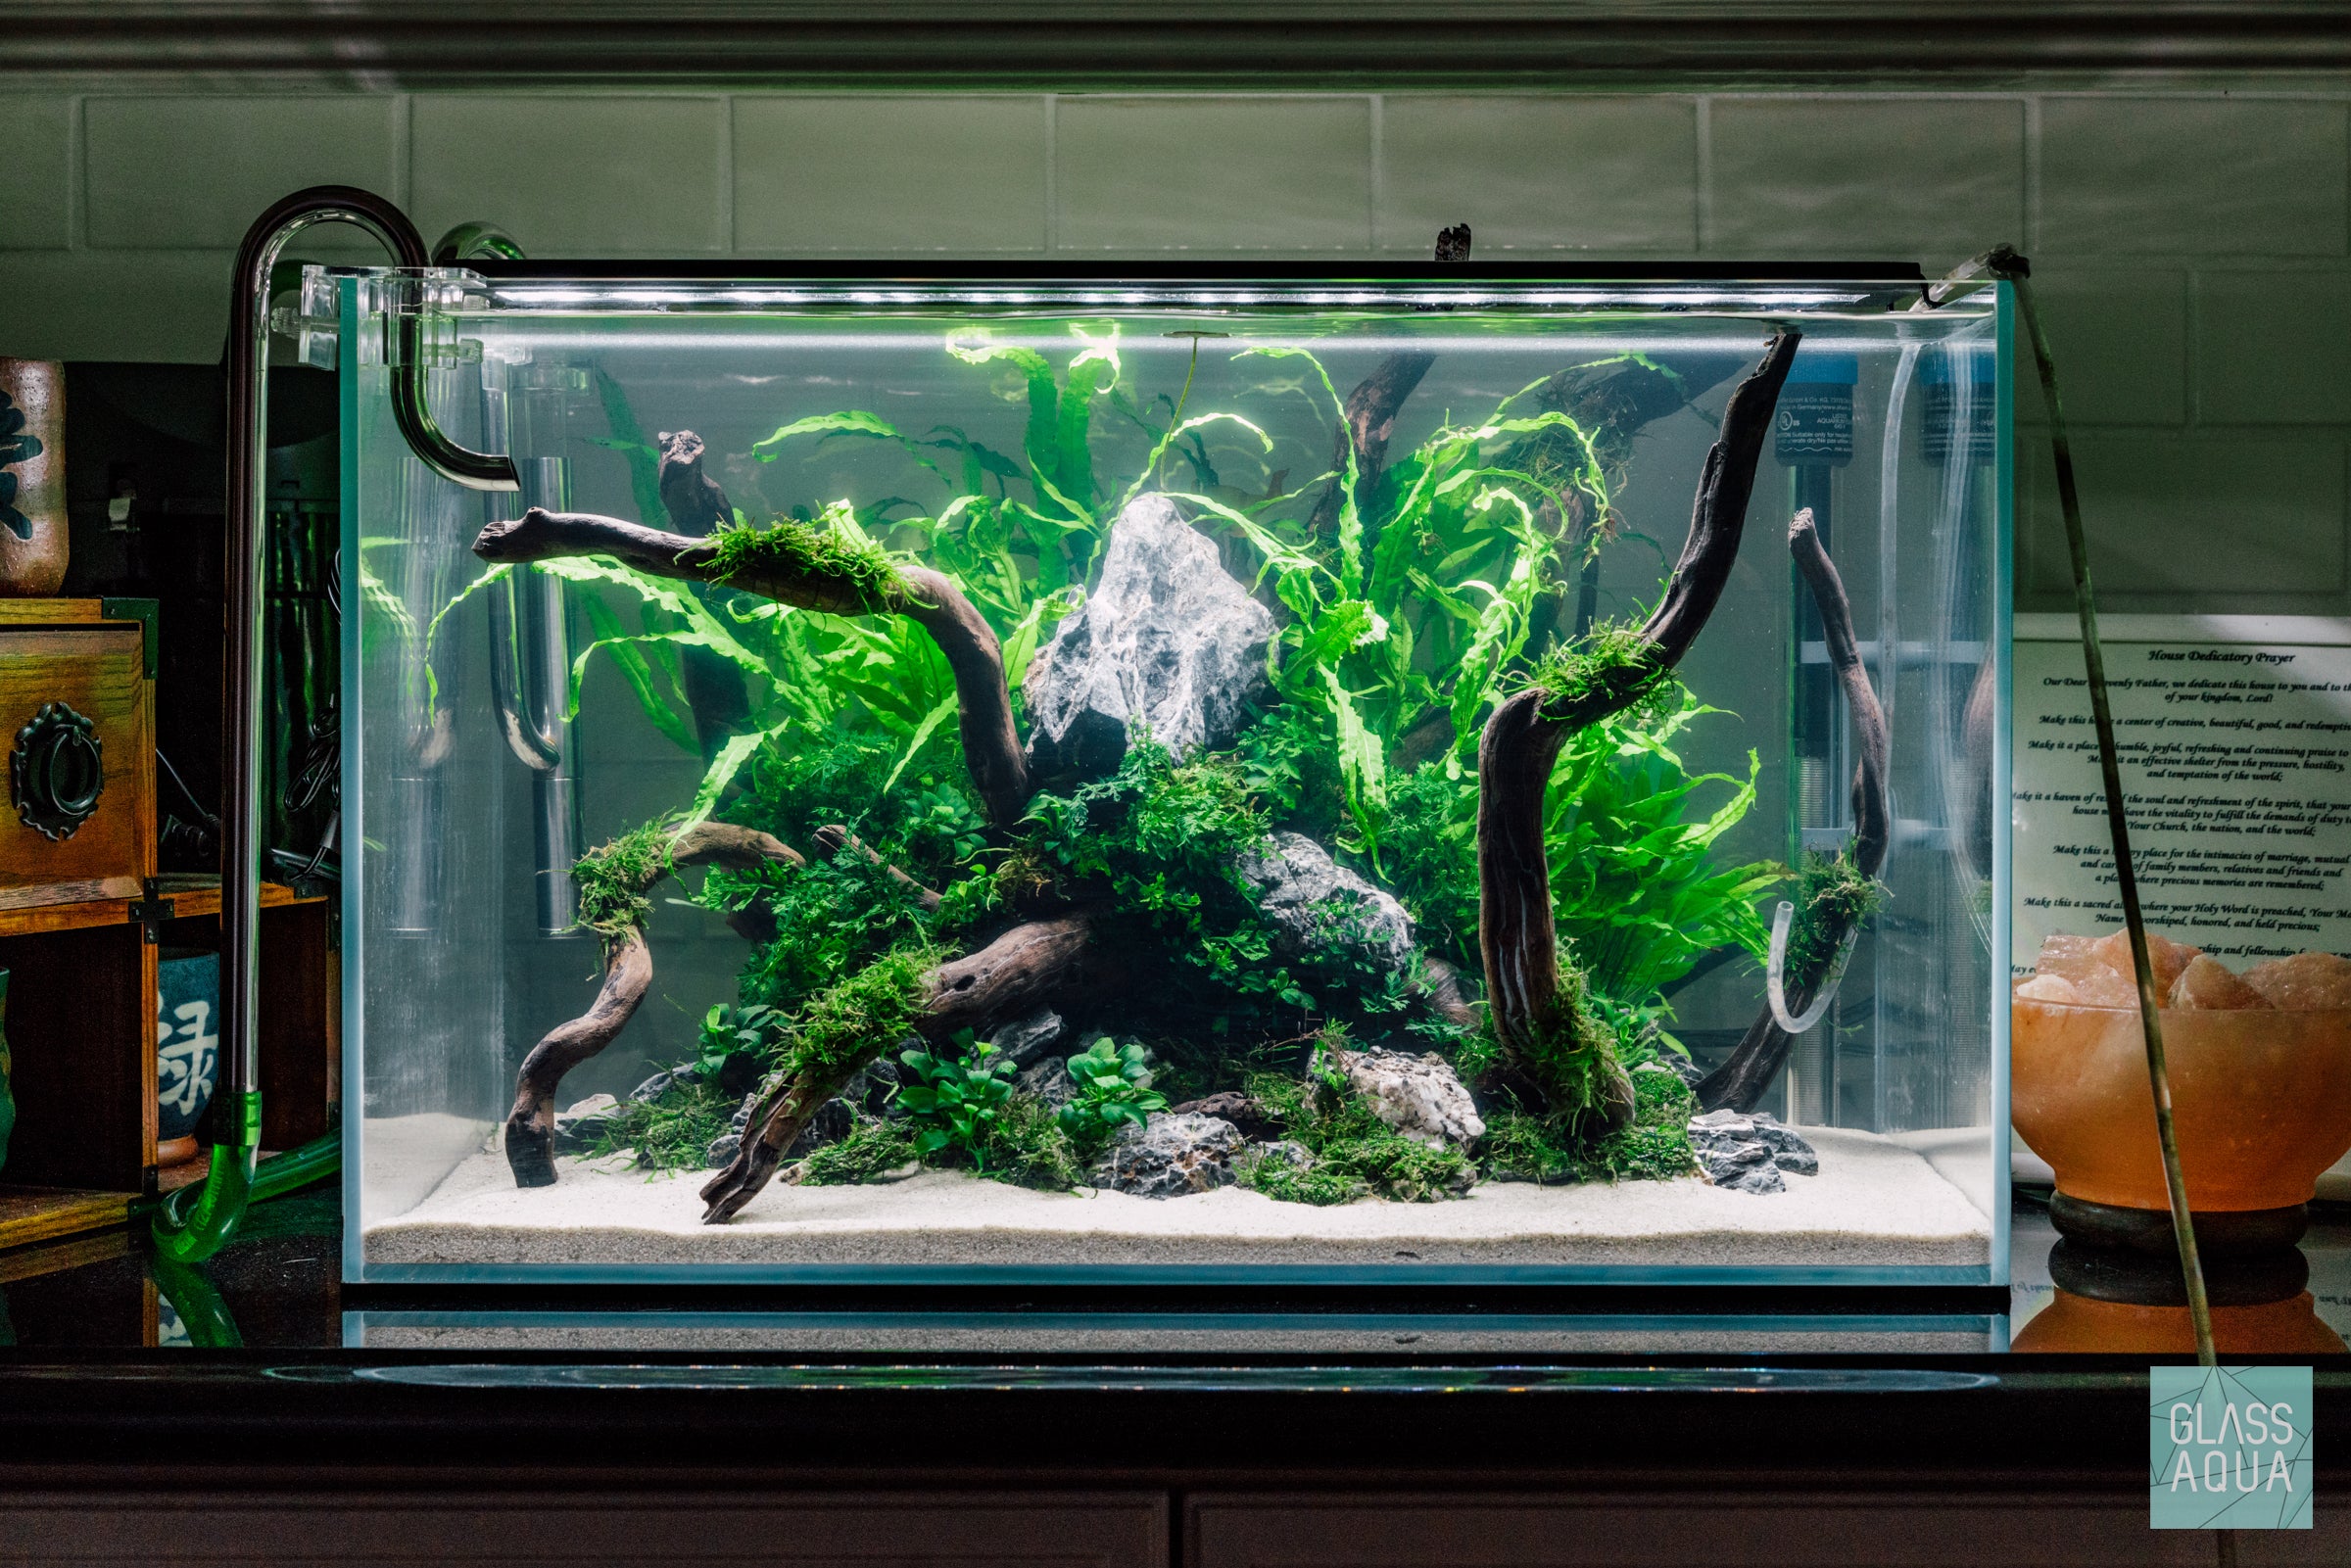 Glass Aqua Planted Aquarium Tank Inspiration - Shop The Look